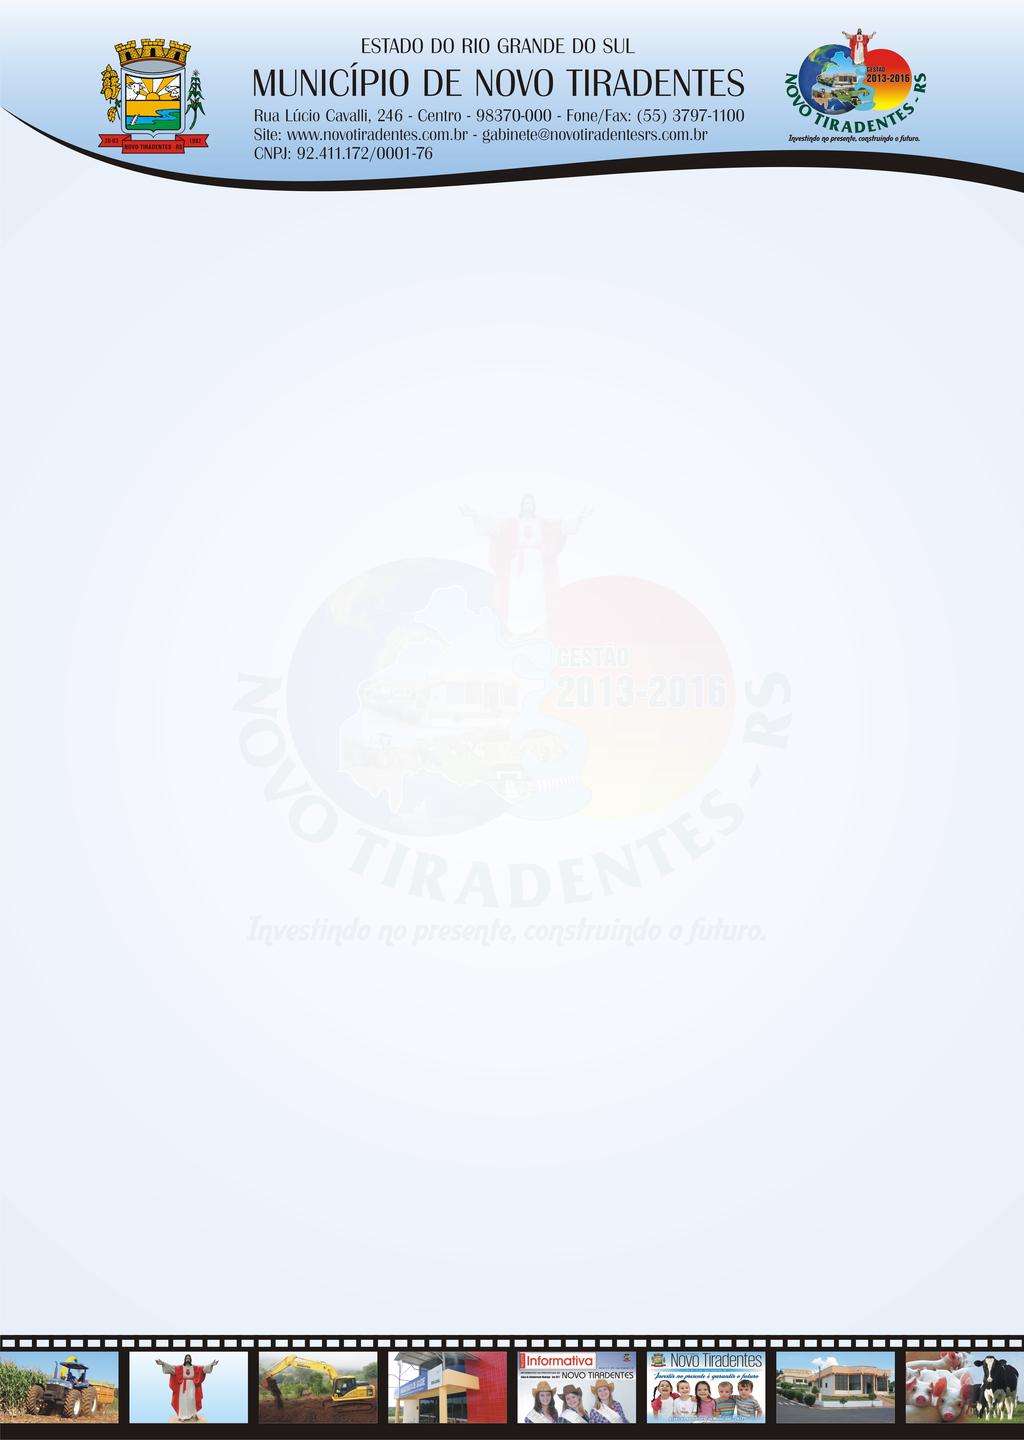 EDITAL DE PREGÃO PRESENCIAL Nº 010/2015 Município de Novo Tiradentes Secretaria Municipal de Obras Edital de Pregão nº 010/2015 Tipo de julgamento: menor preço por item Processo nº 022/2015 Edital de